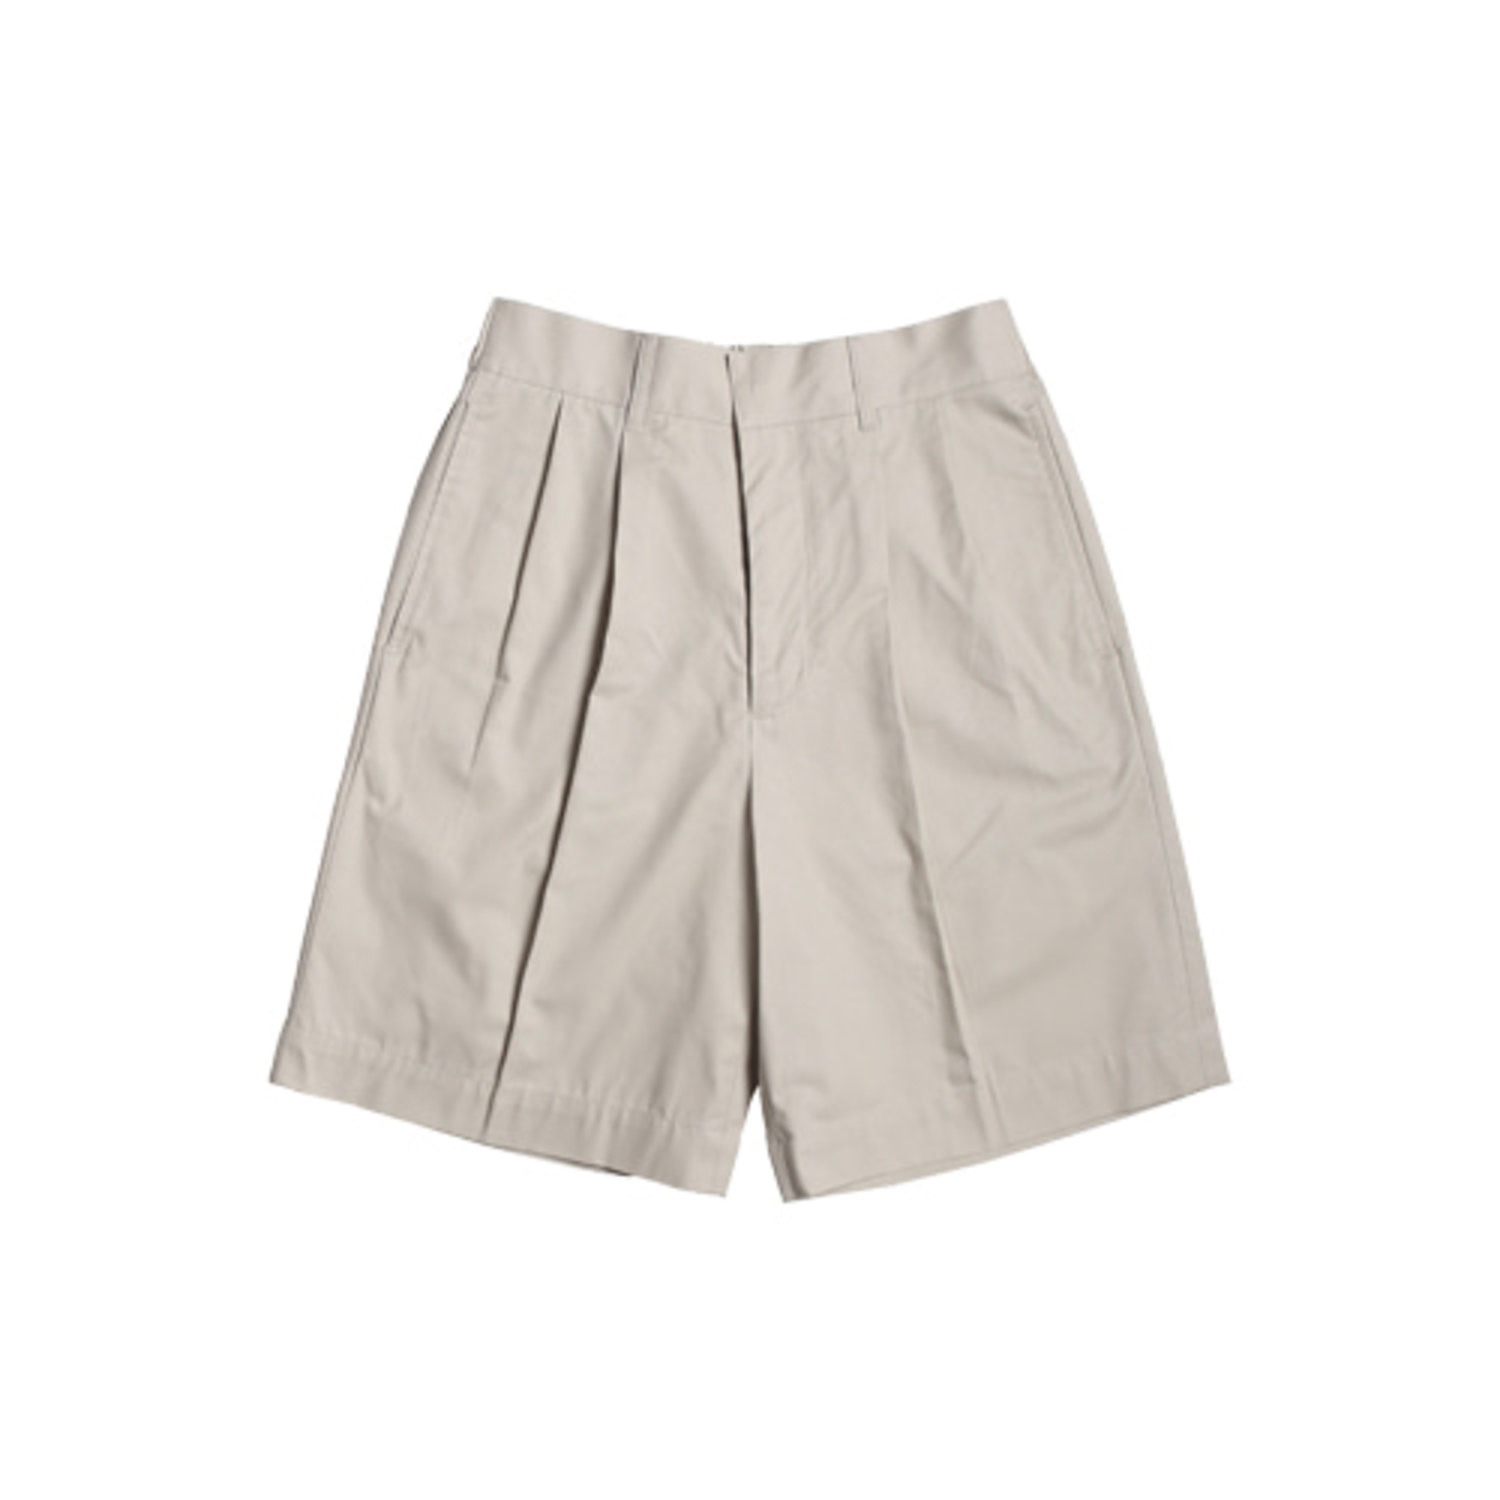 Long Half Cotton Shorts (Beige)